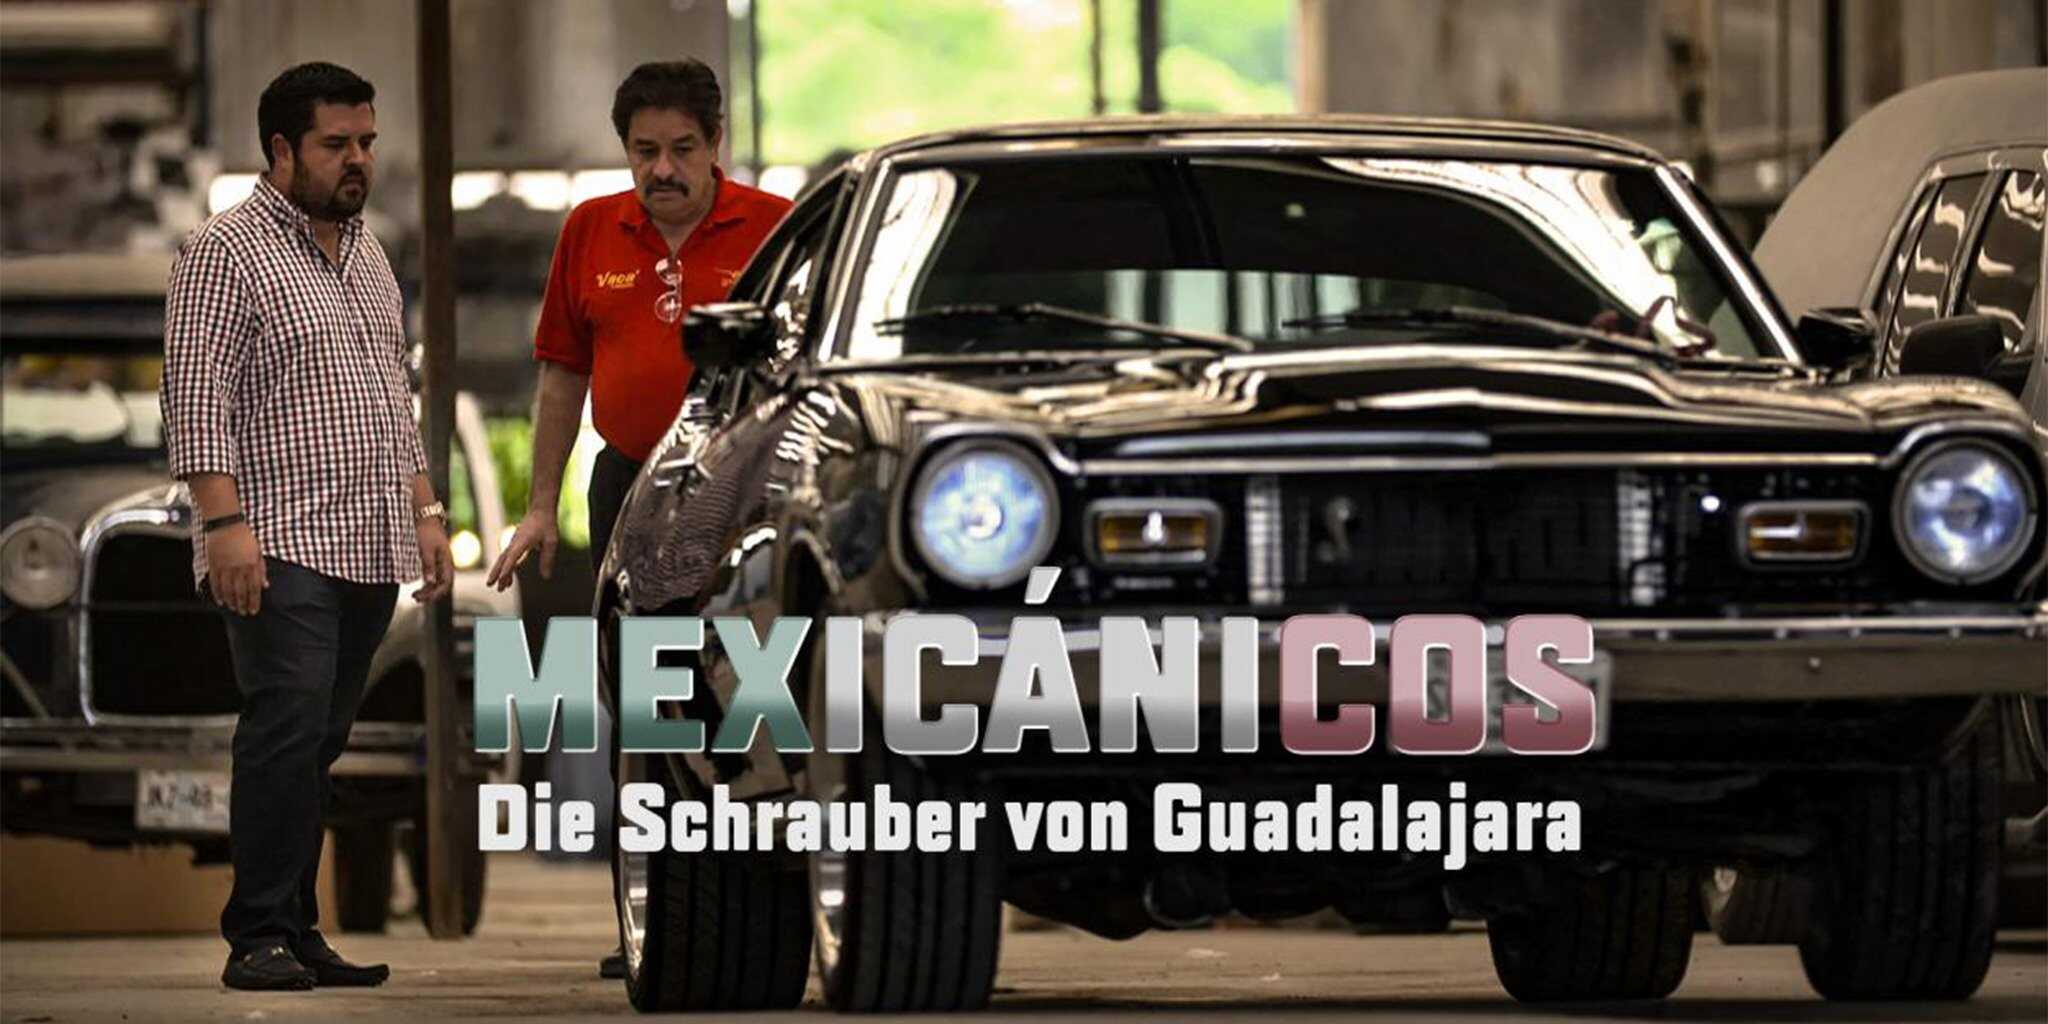 Mexicanicos - Die Schrauber von Guadalajara 